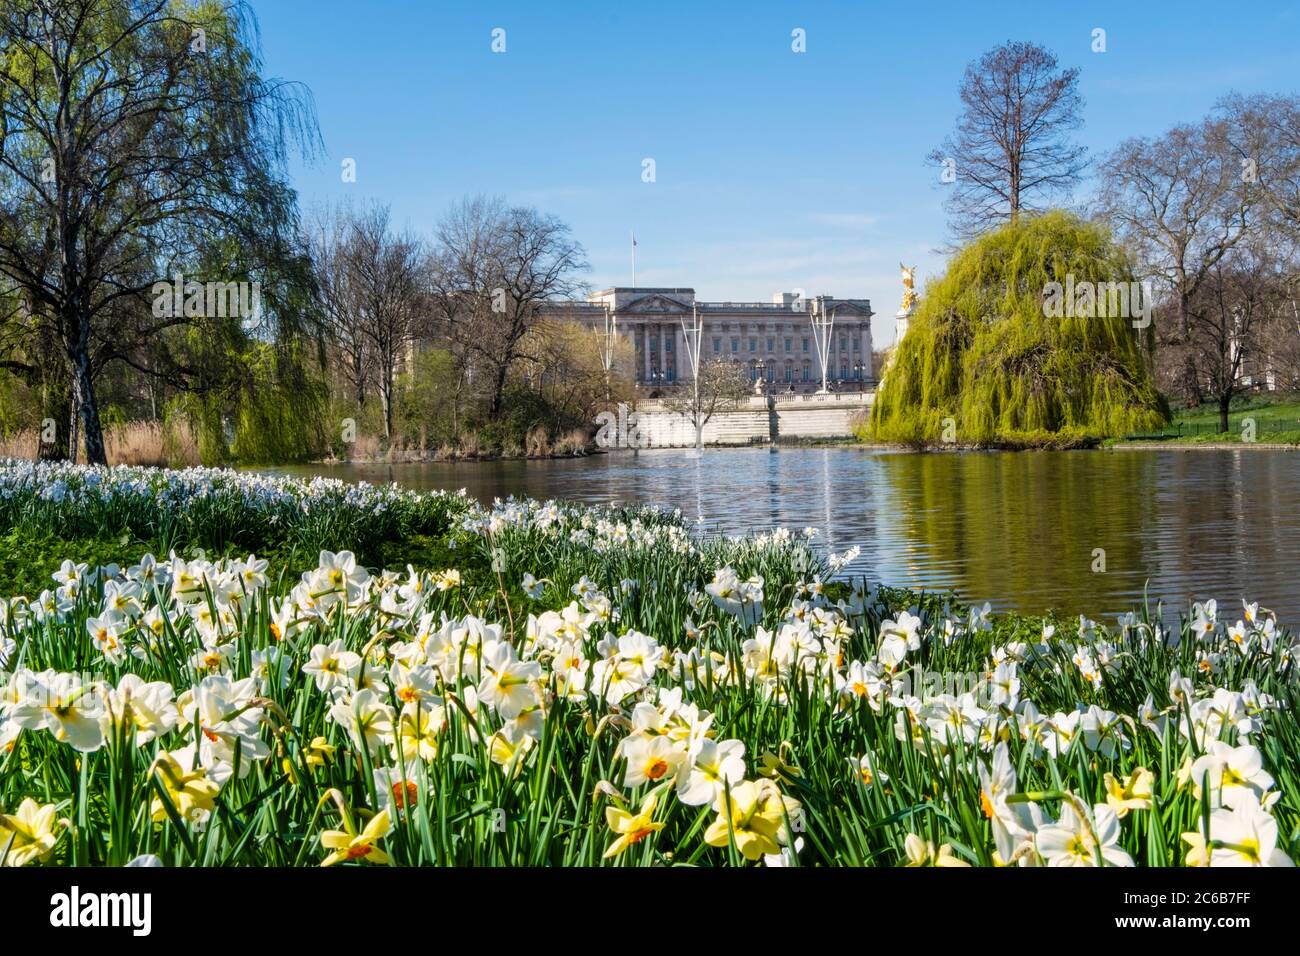 Vue sur Buckingham Palace au printemps depuis St. James's Park, Londres, Angleterre, Royaume-Uni, Europe Banque D'Images